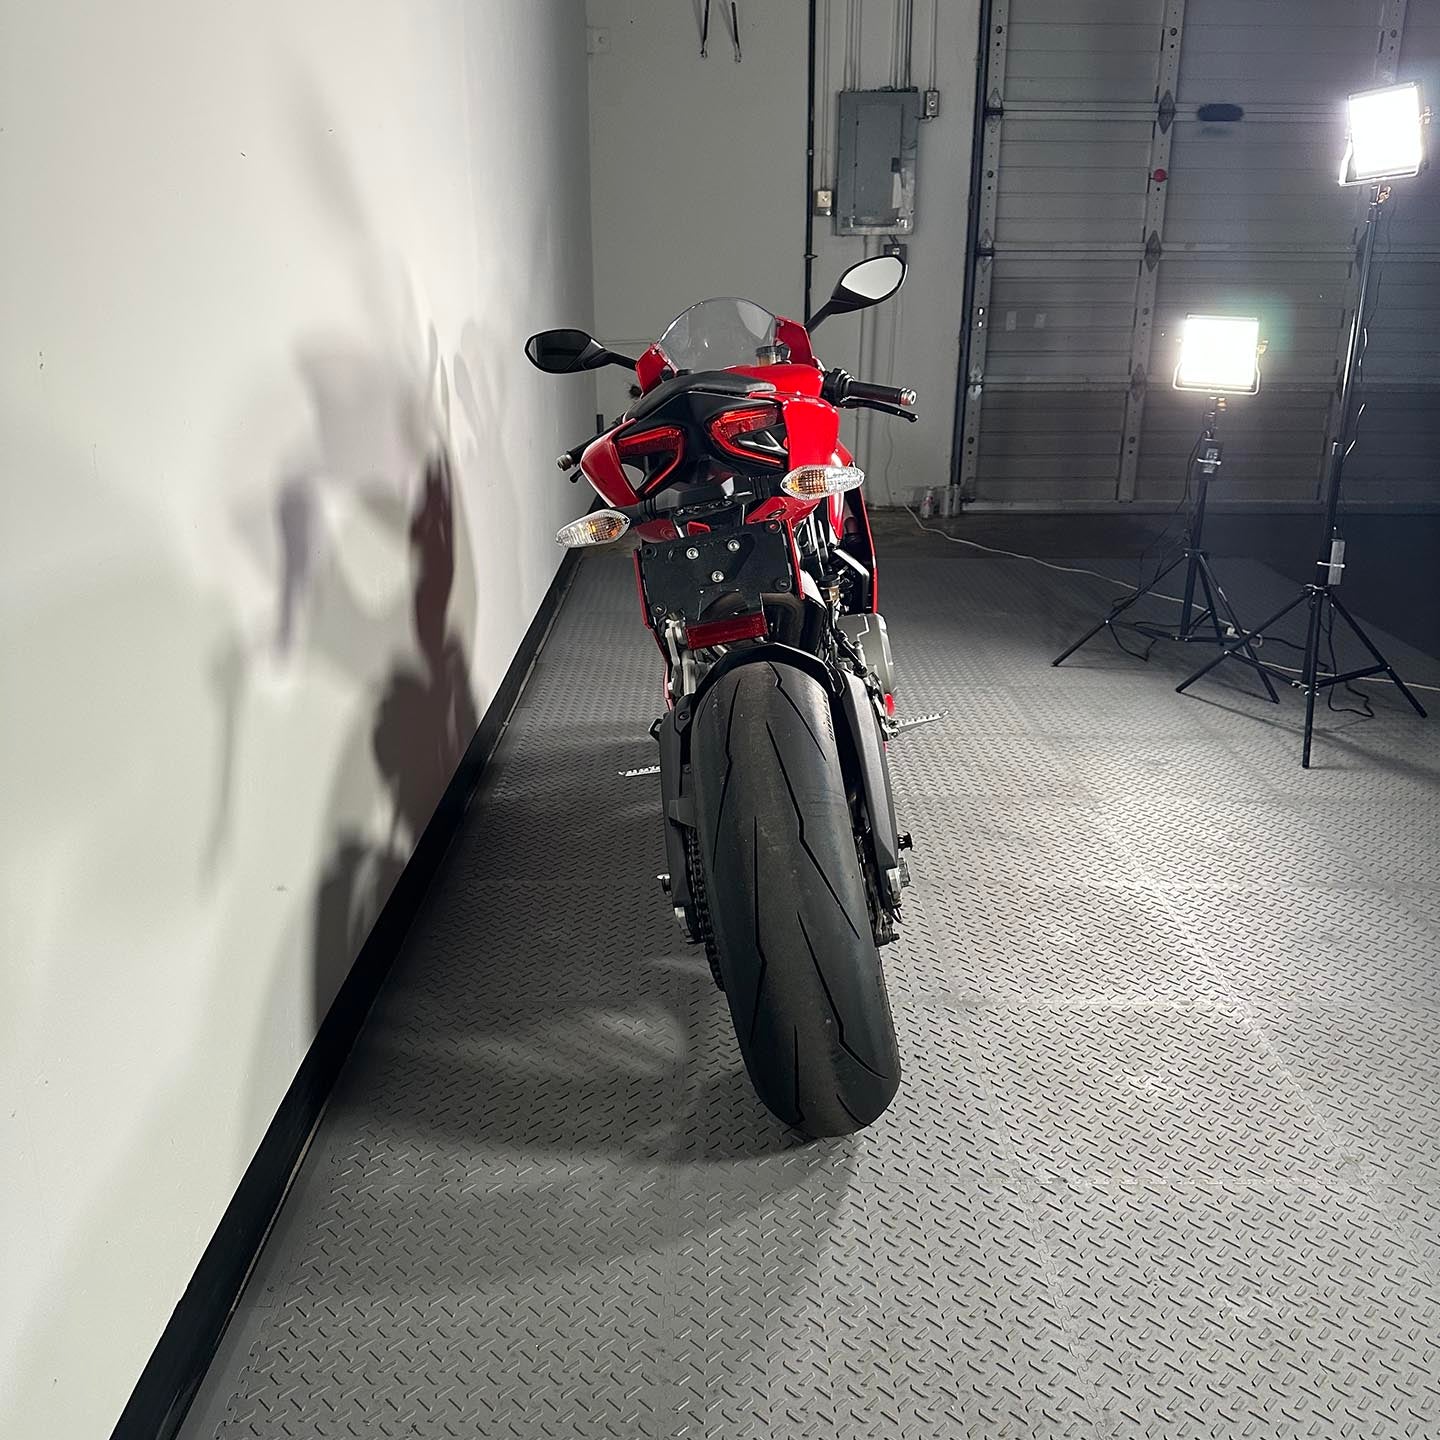 2014 Ducati Panigale 899 (6,225 Miles)